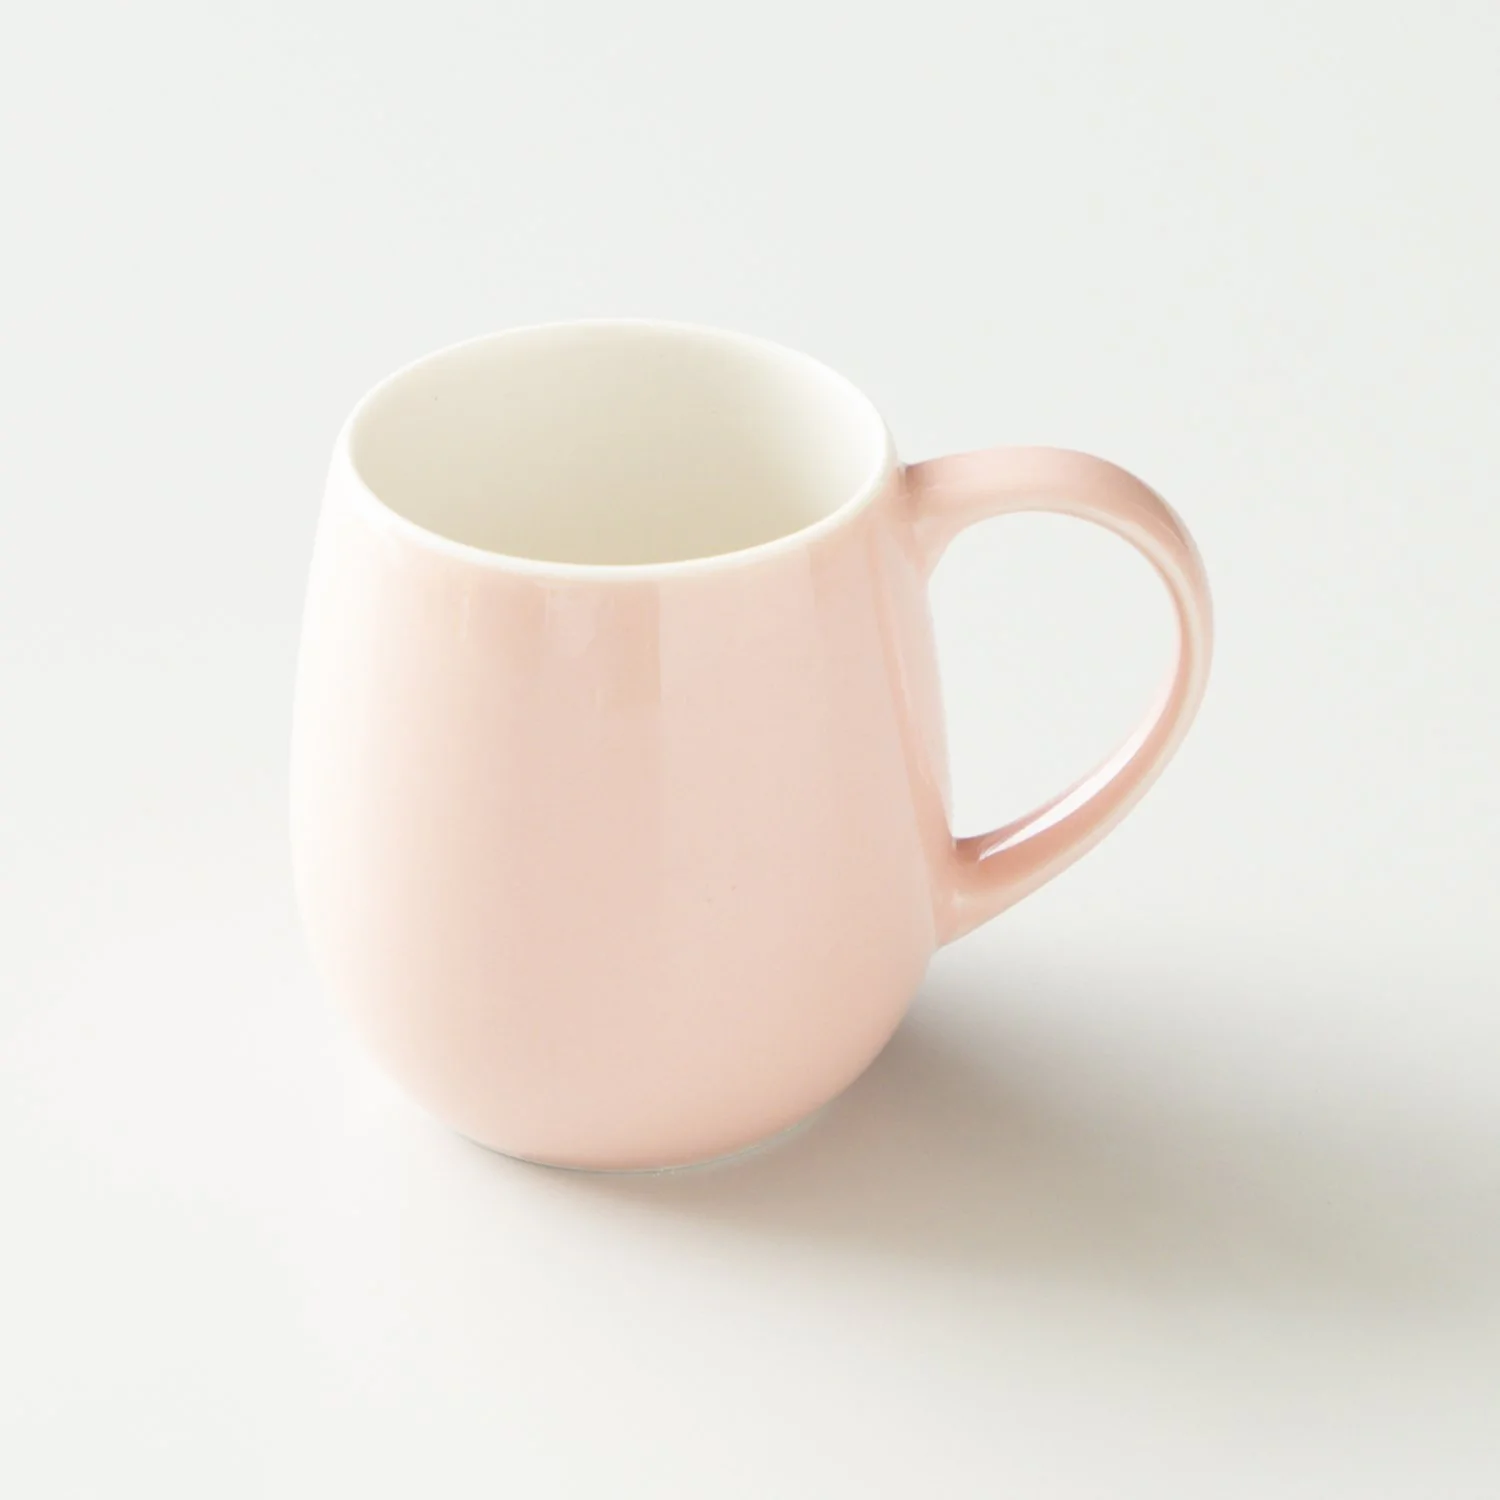 Ly sứ uống trà cà phê Origami Barrel Aroma Mug 320ml